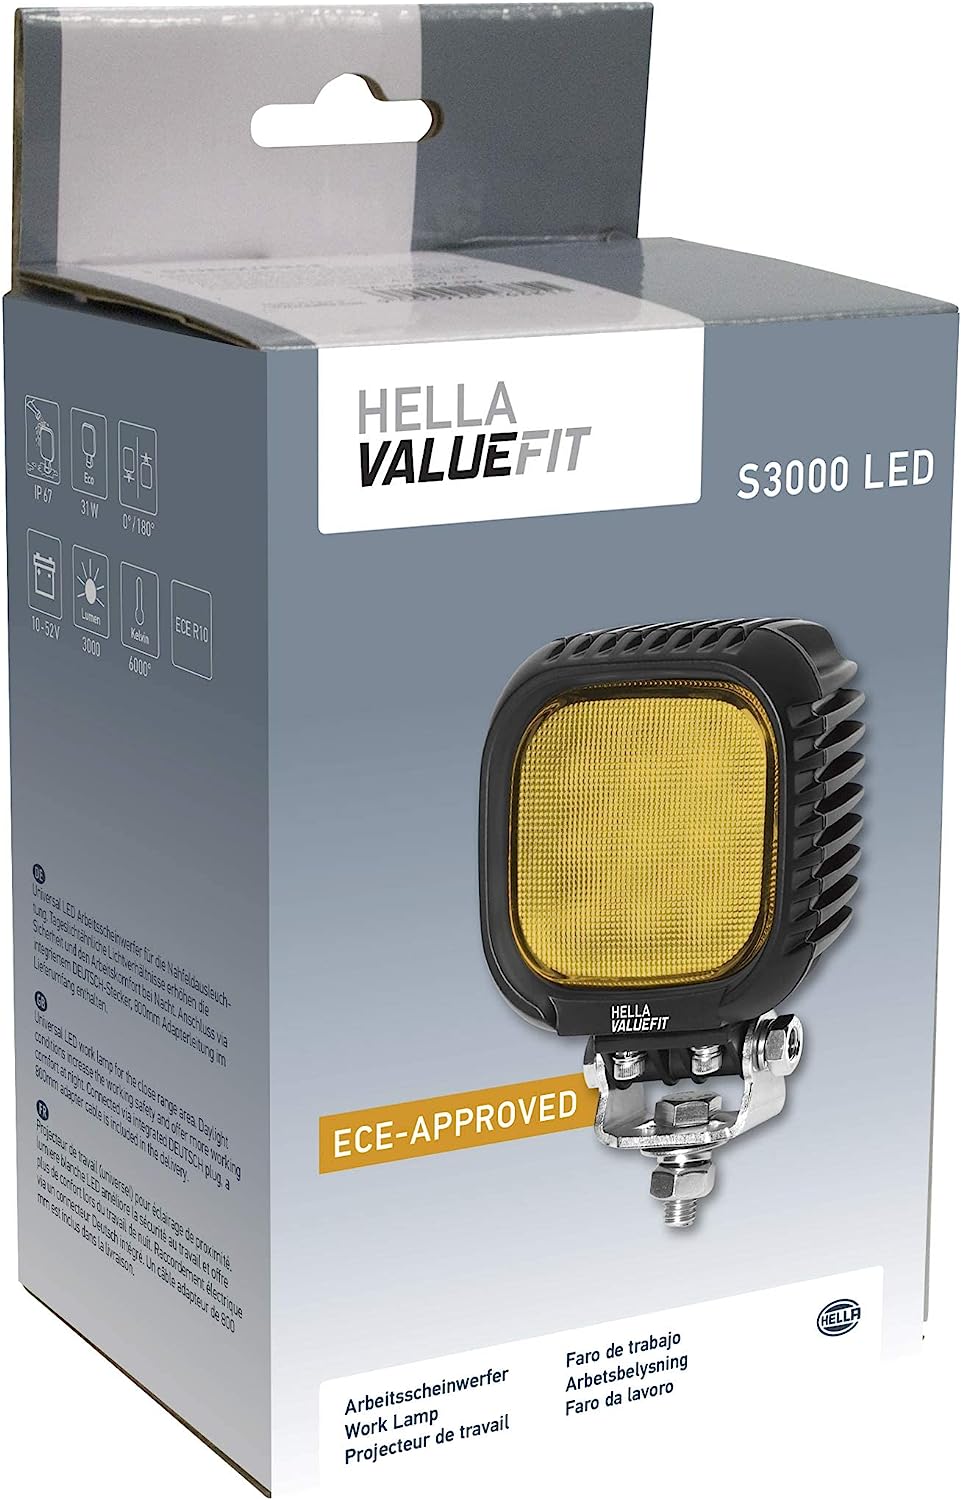 Farol Hella Valuefit S3000 LED